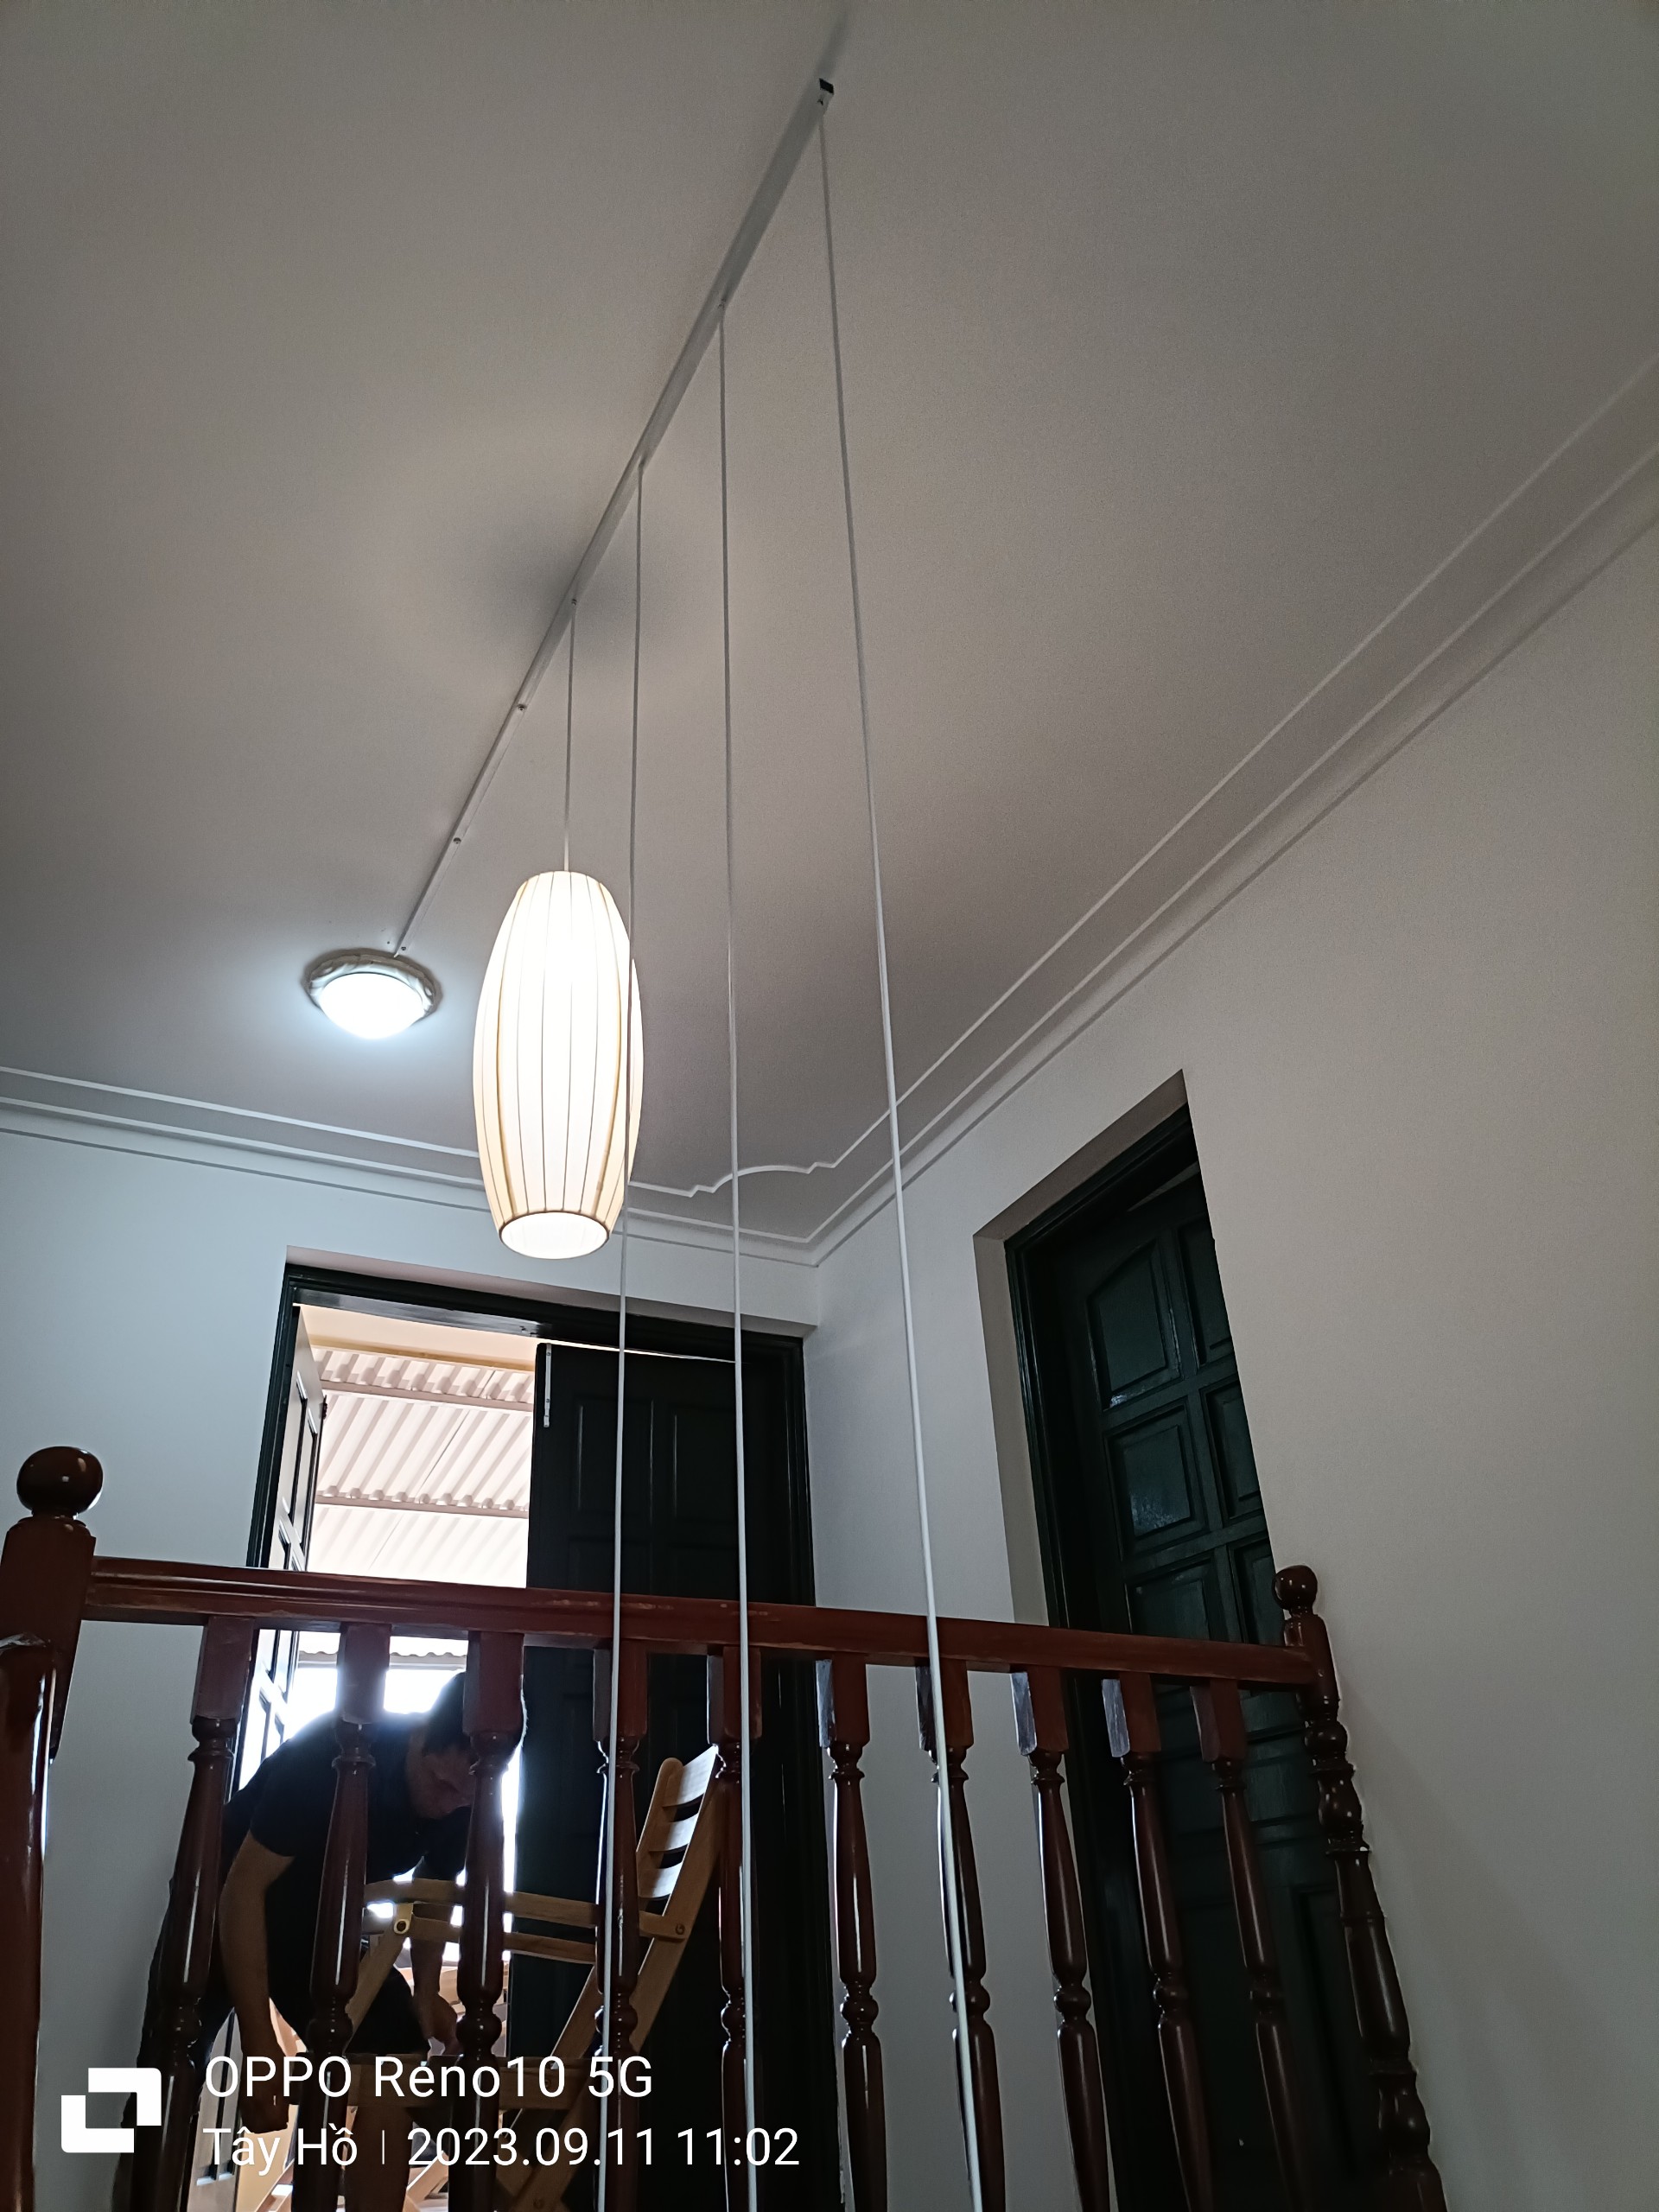 Lantern installation - stairwell decor 